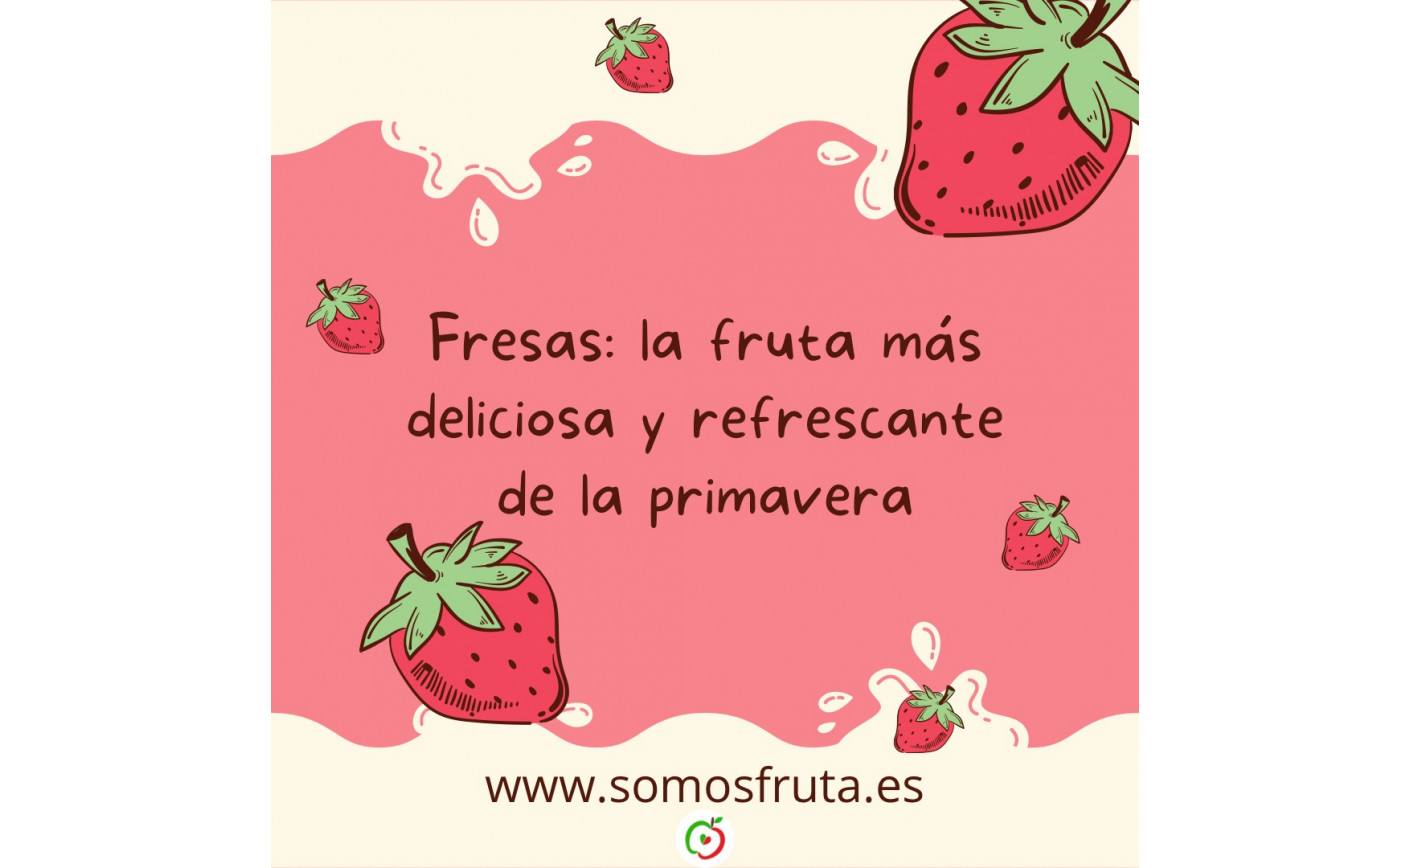 Fresas: la fruta más deliciosa y refrescante de la primavera